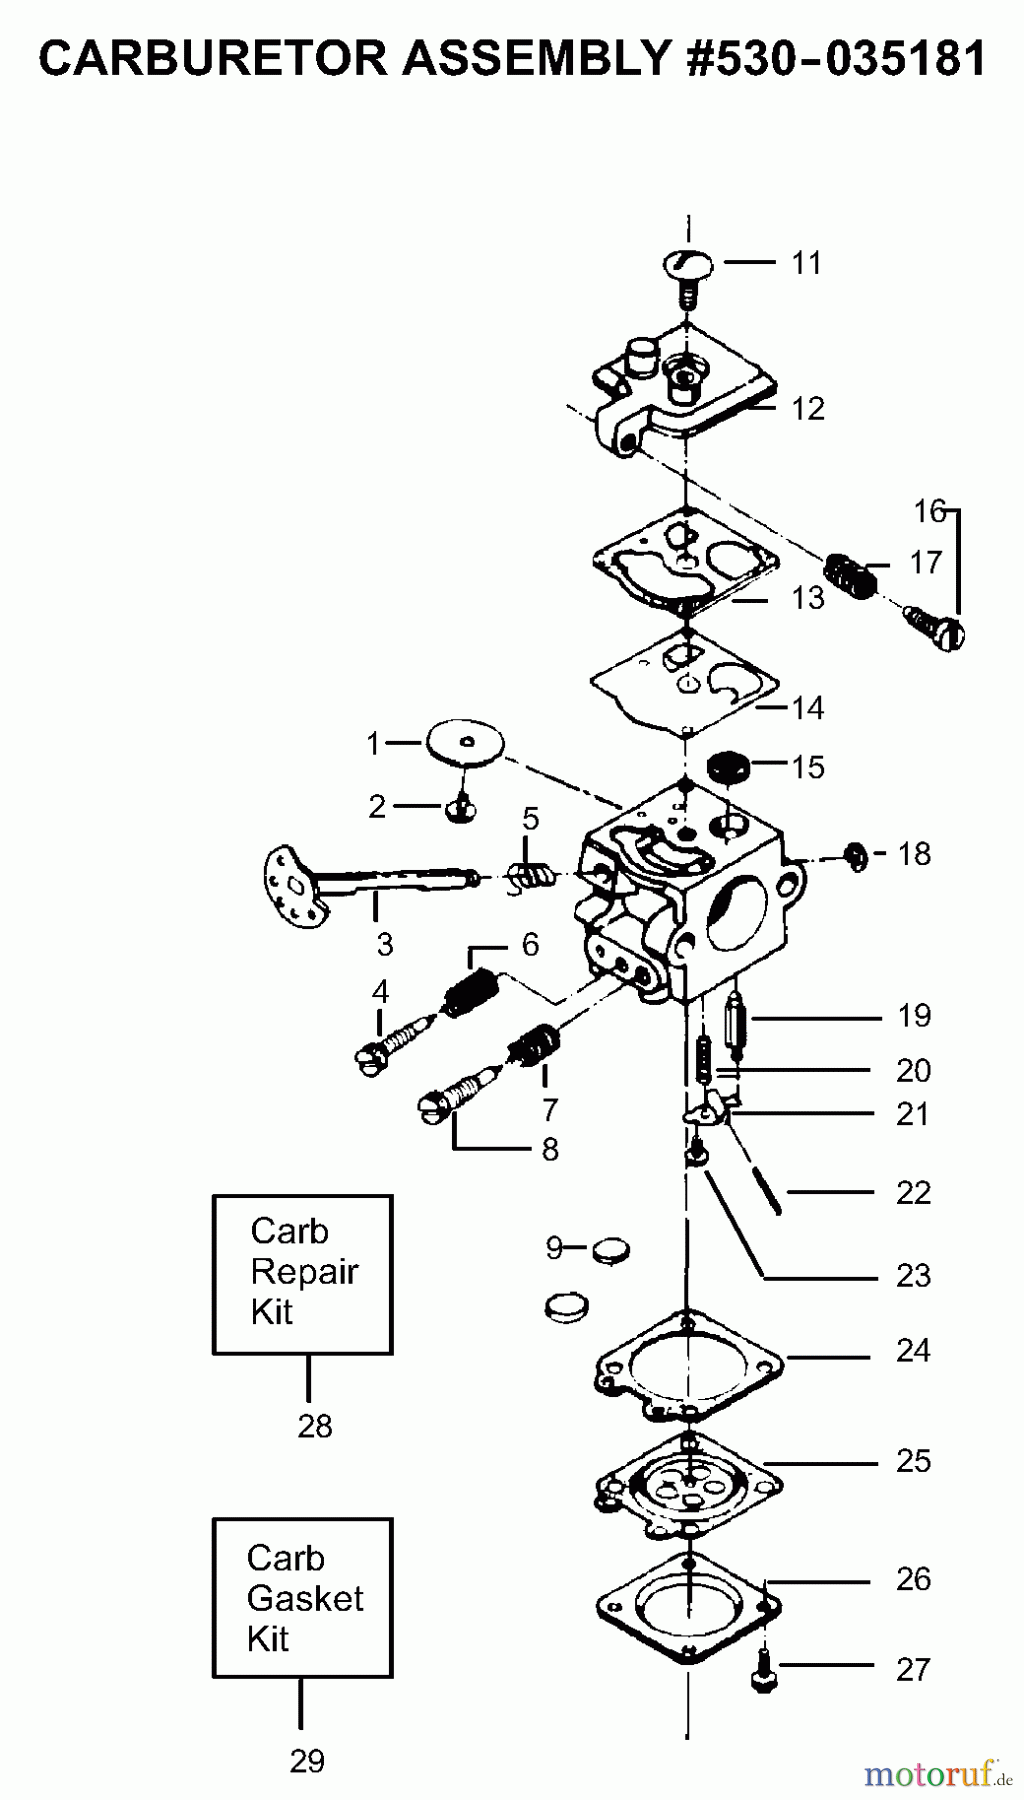  Poulan / Weed Eater Motorsägen PP200 - Poulan Pro Chainsaw Carburetor Assembly P/N 530035181